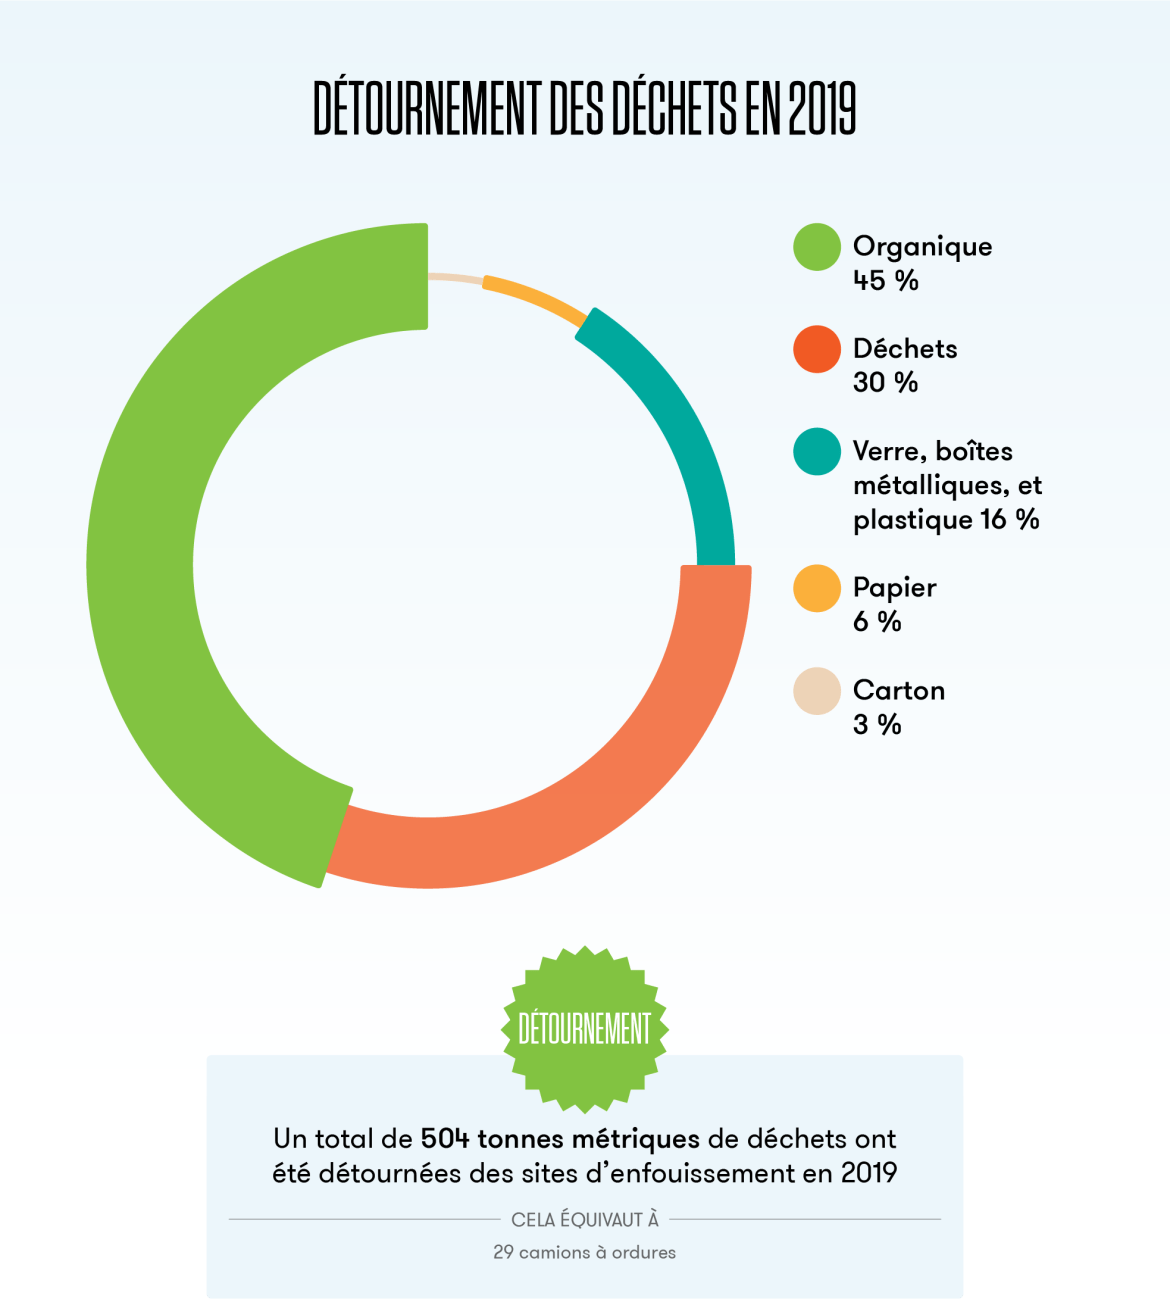 Ce diagramme en secteurs montre que la Tour CN a détourné un total de 504 tonnes métriques de déchets des sites d’enfouissement en 2019.